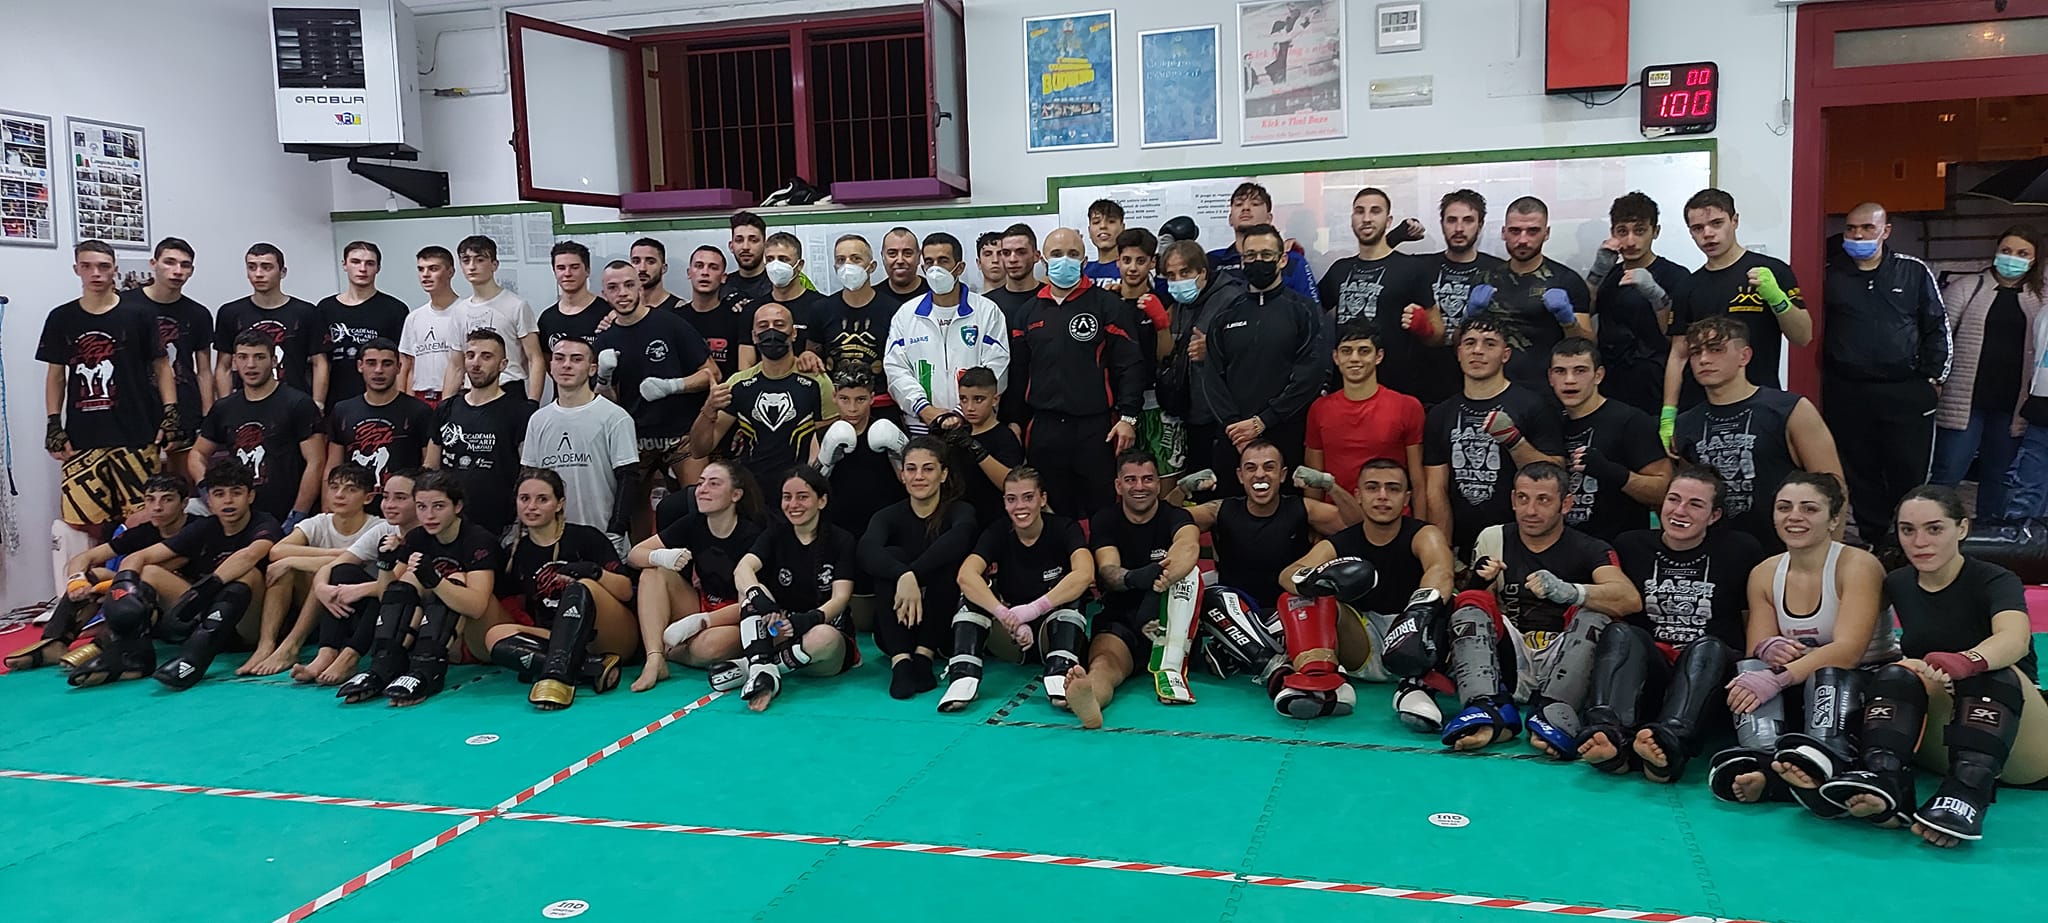 Kickboxing, successo per il primo Sparring Day in Basilicata nella palestra Dynamic Center del Maestro Biagio Tralli